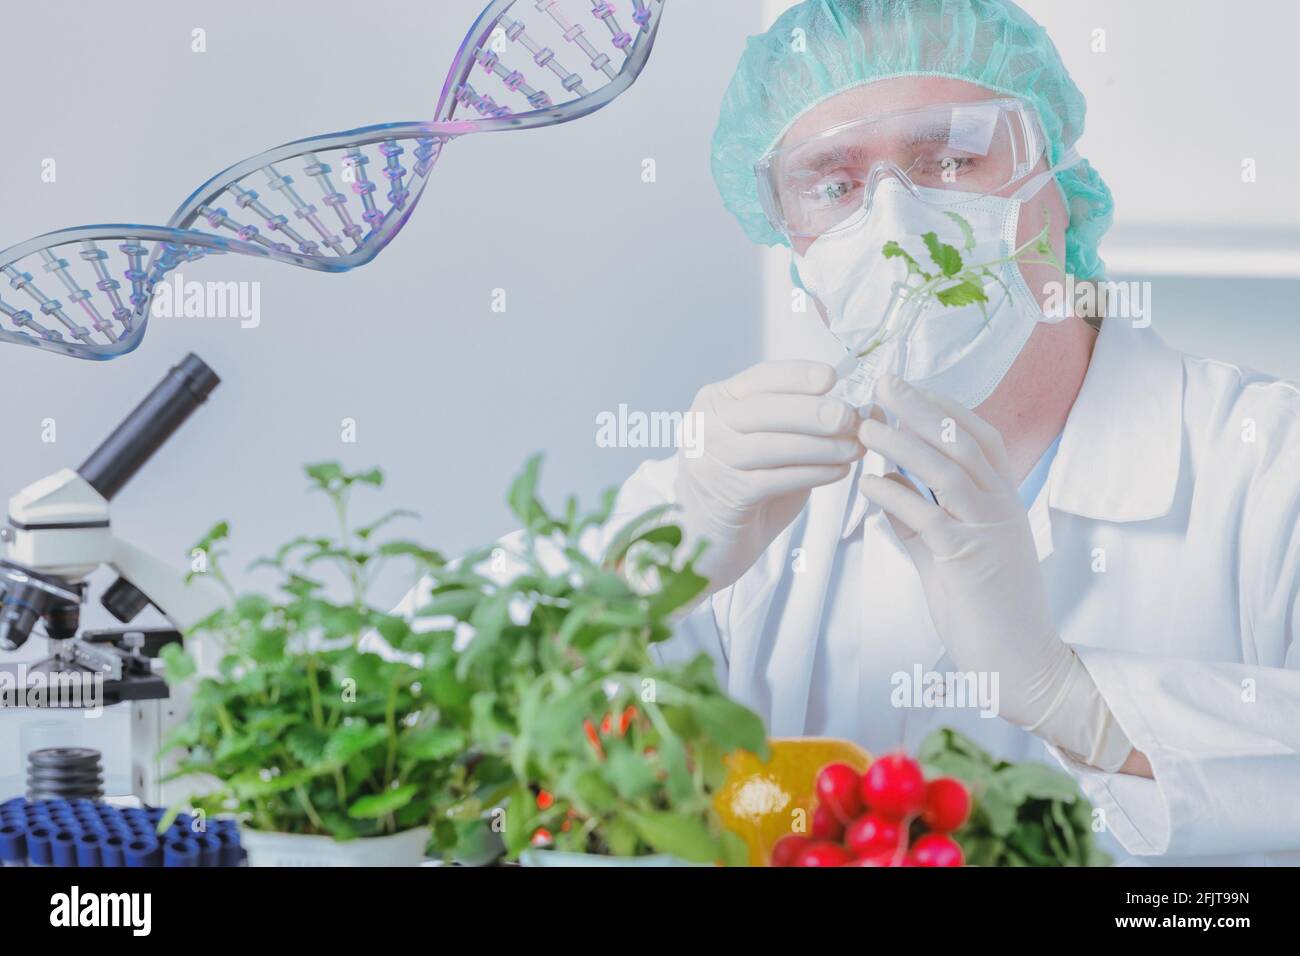 Investigador con plantas OGM. El organismo genéticamente modificado o GEO es una planta cuyo material genético ha sido alterado utilizando técnicas de ingeniería genética Foto de stock